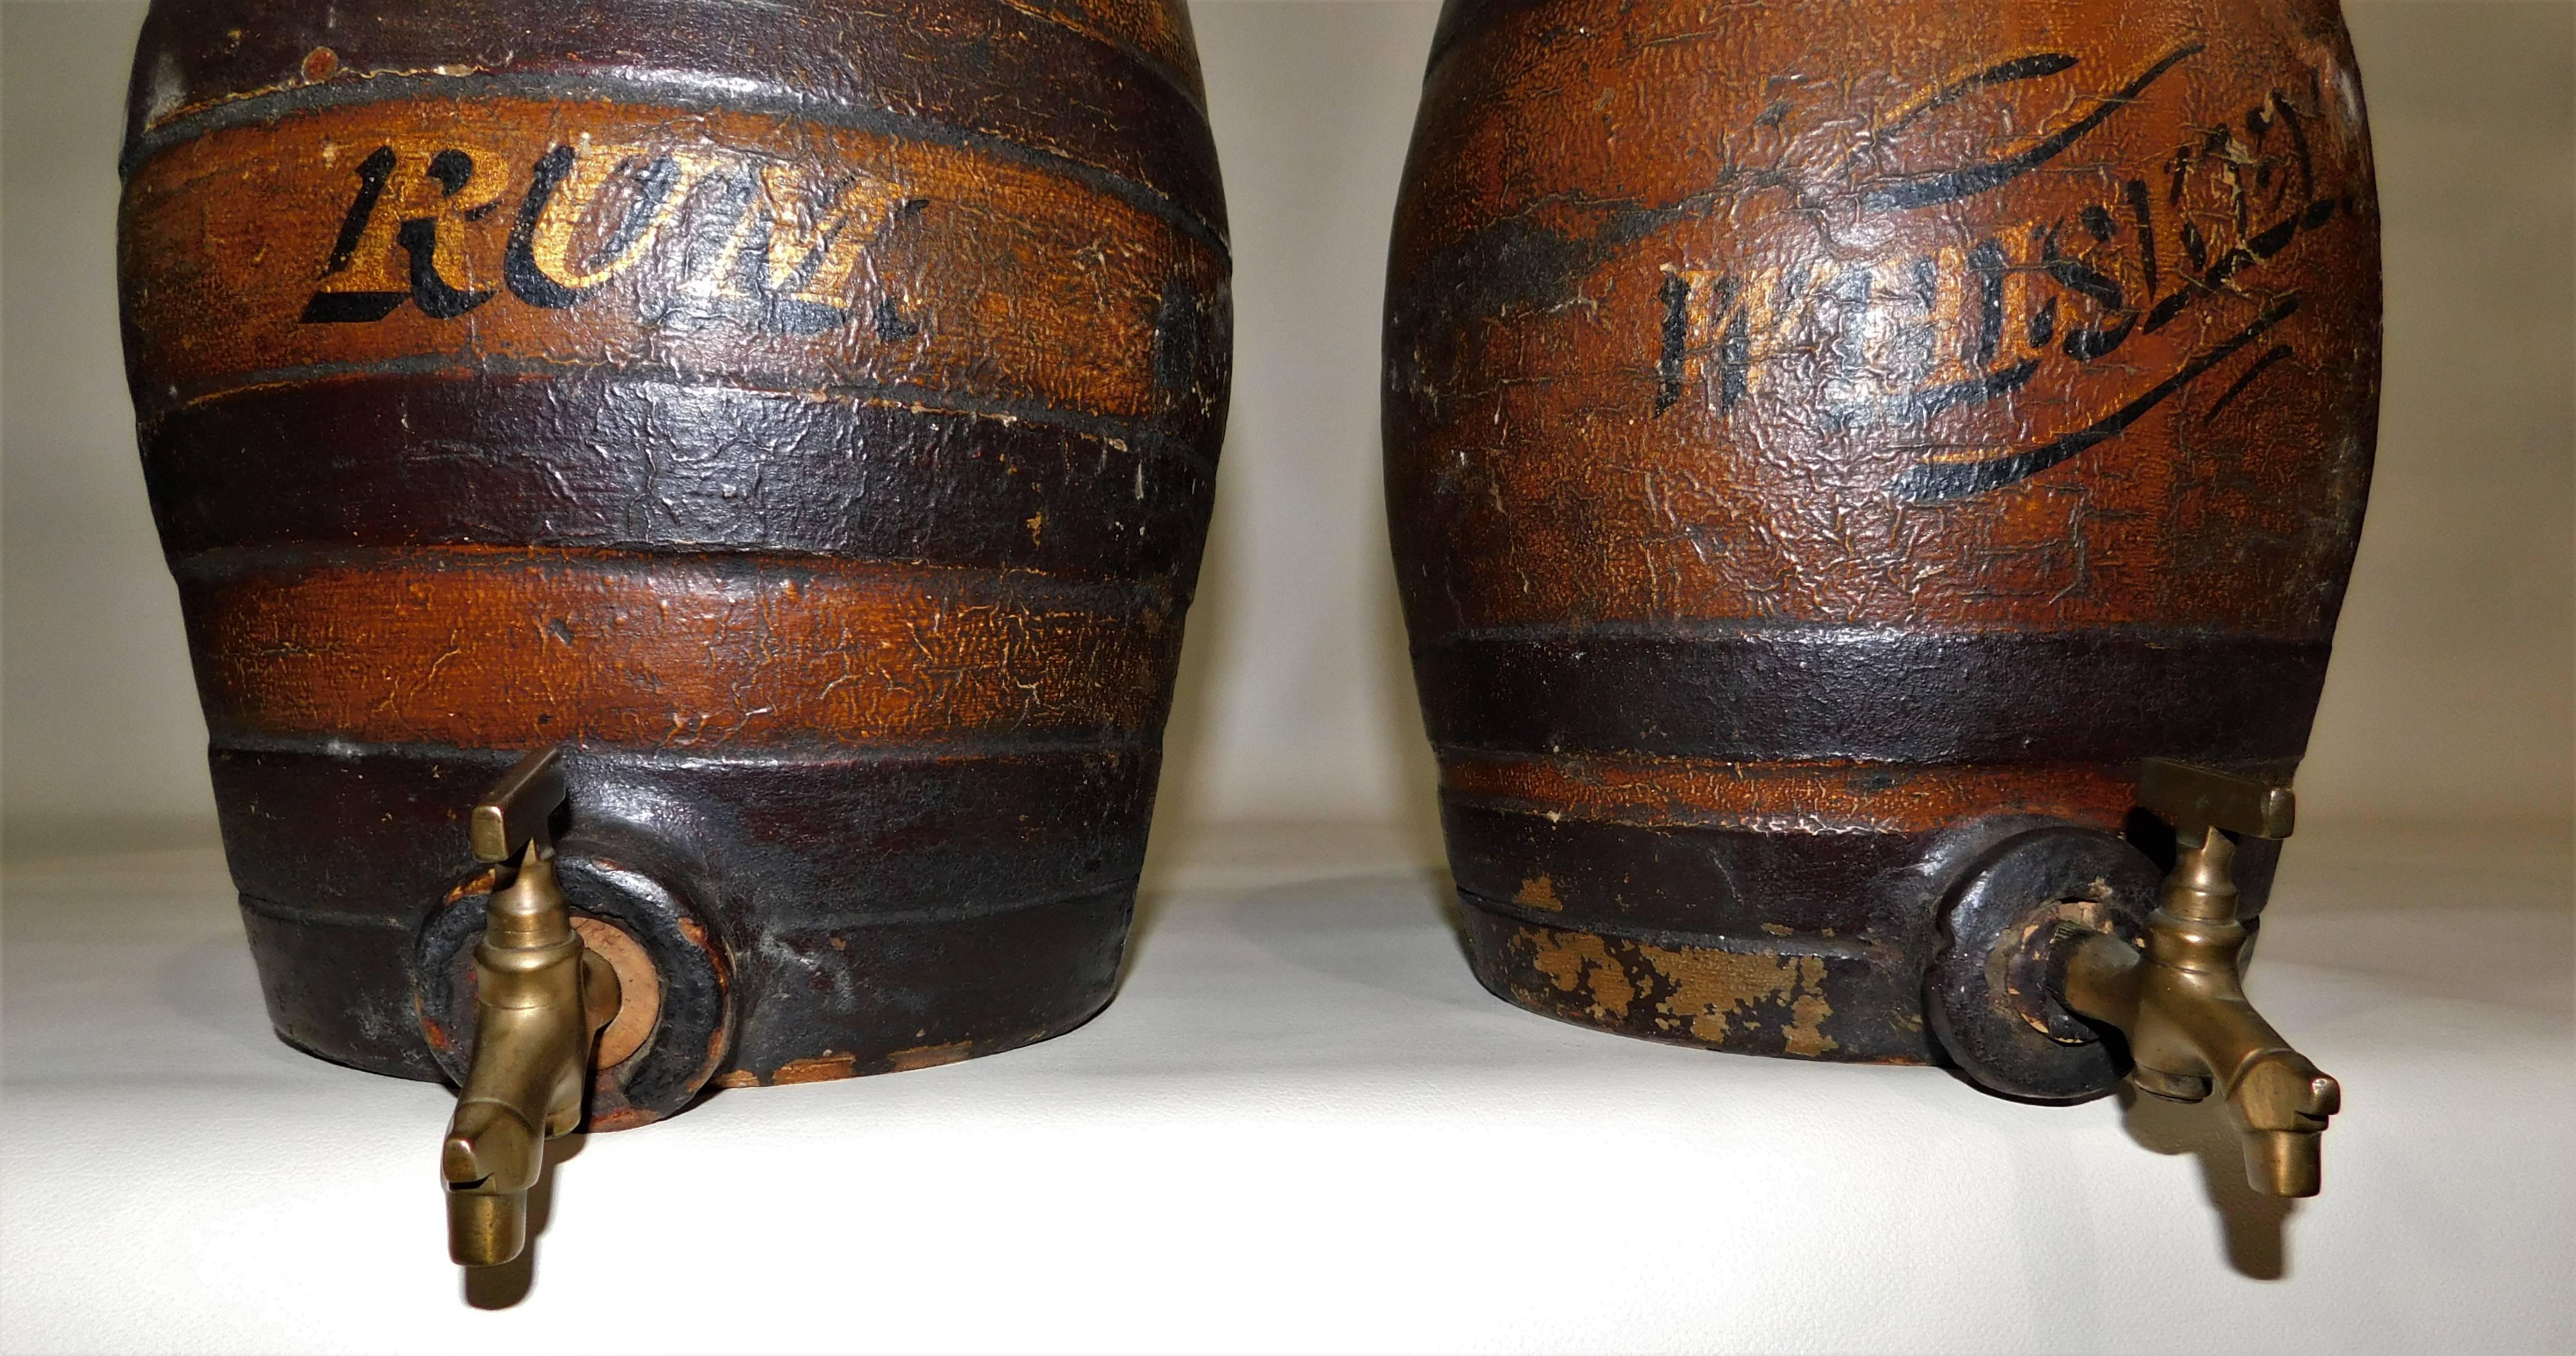 Große 19. Jahrhundert antike Steingut Keramik Fass Fass Whiskey und Rum Bar Spirituosen Spender mit Messing Zapfen. Die Ausgießer aus Messing sind 2 Zoll lang, das Rumfass ist 10 Zoll hoch, das Whiskeyfass ist 10,5 Zoll hoch.